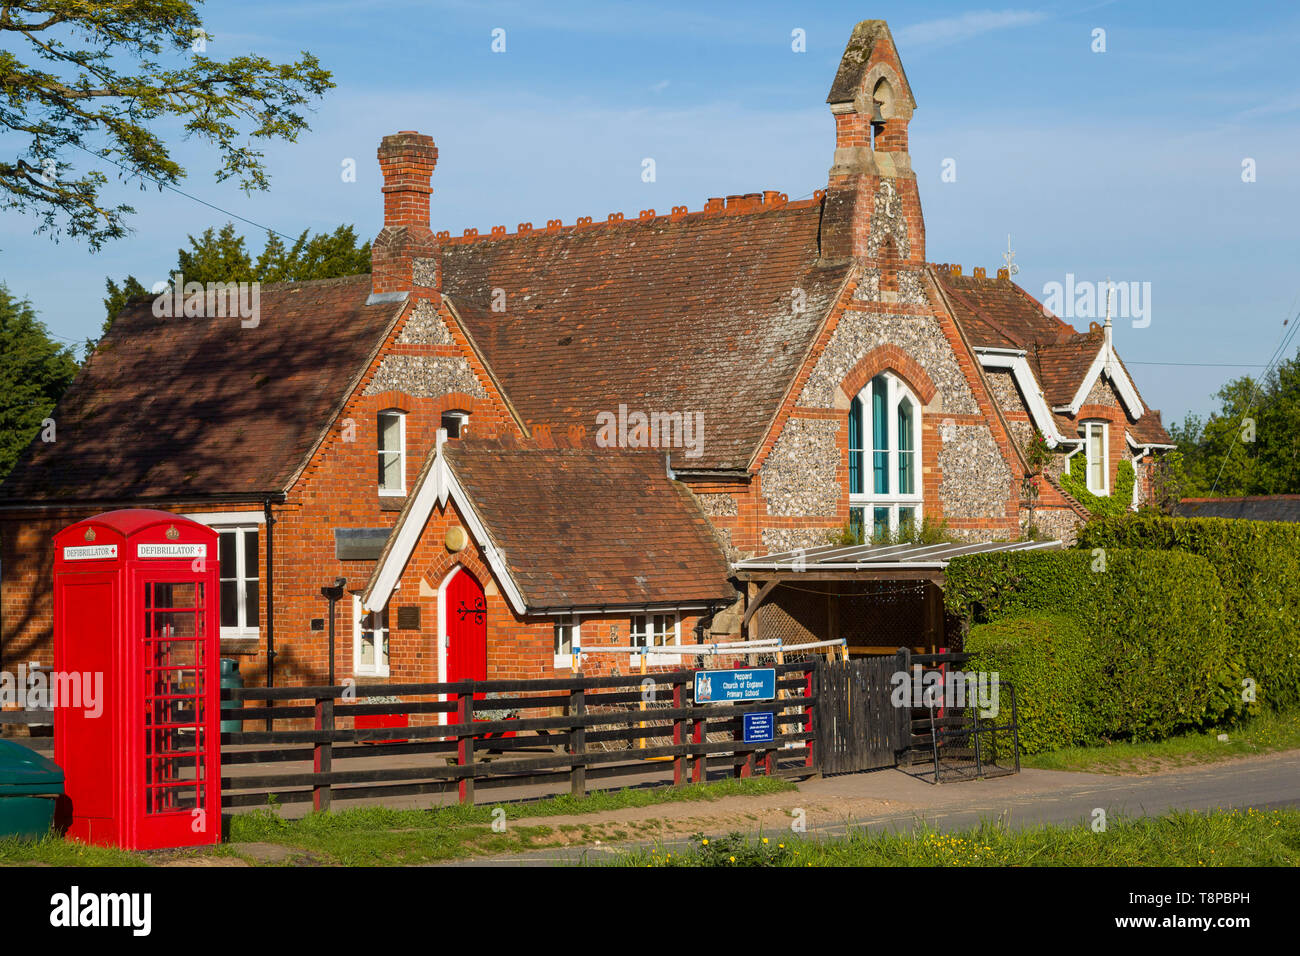 Victorien traditionnel briques et silex bâtiment scolaire, toujours utilisé à Peppard, Oxfordshire avec un téléphone rouge fort converti pour un défibrillateur Banque D'Images